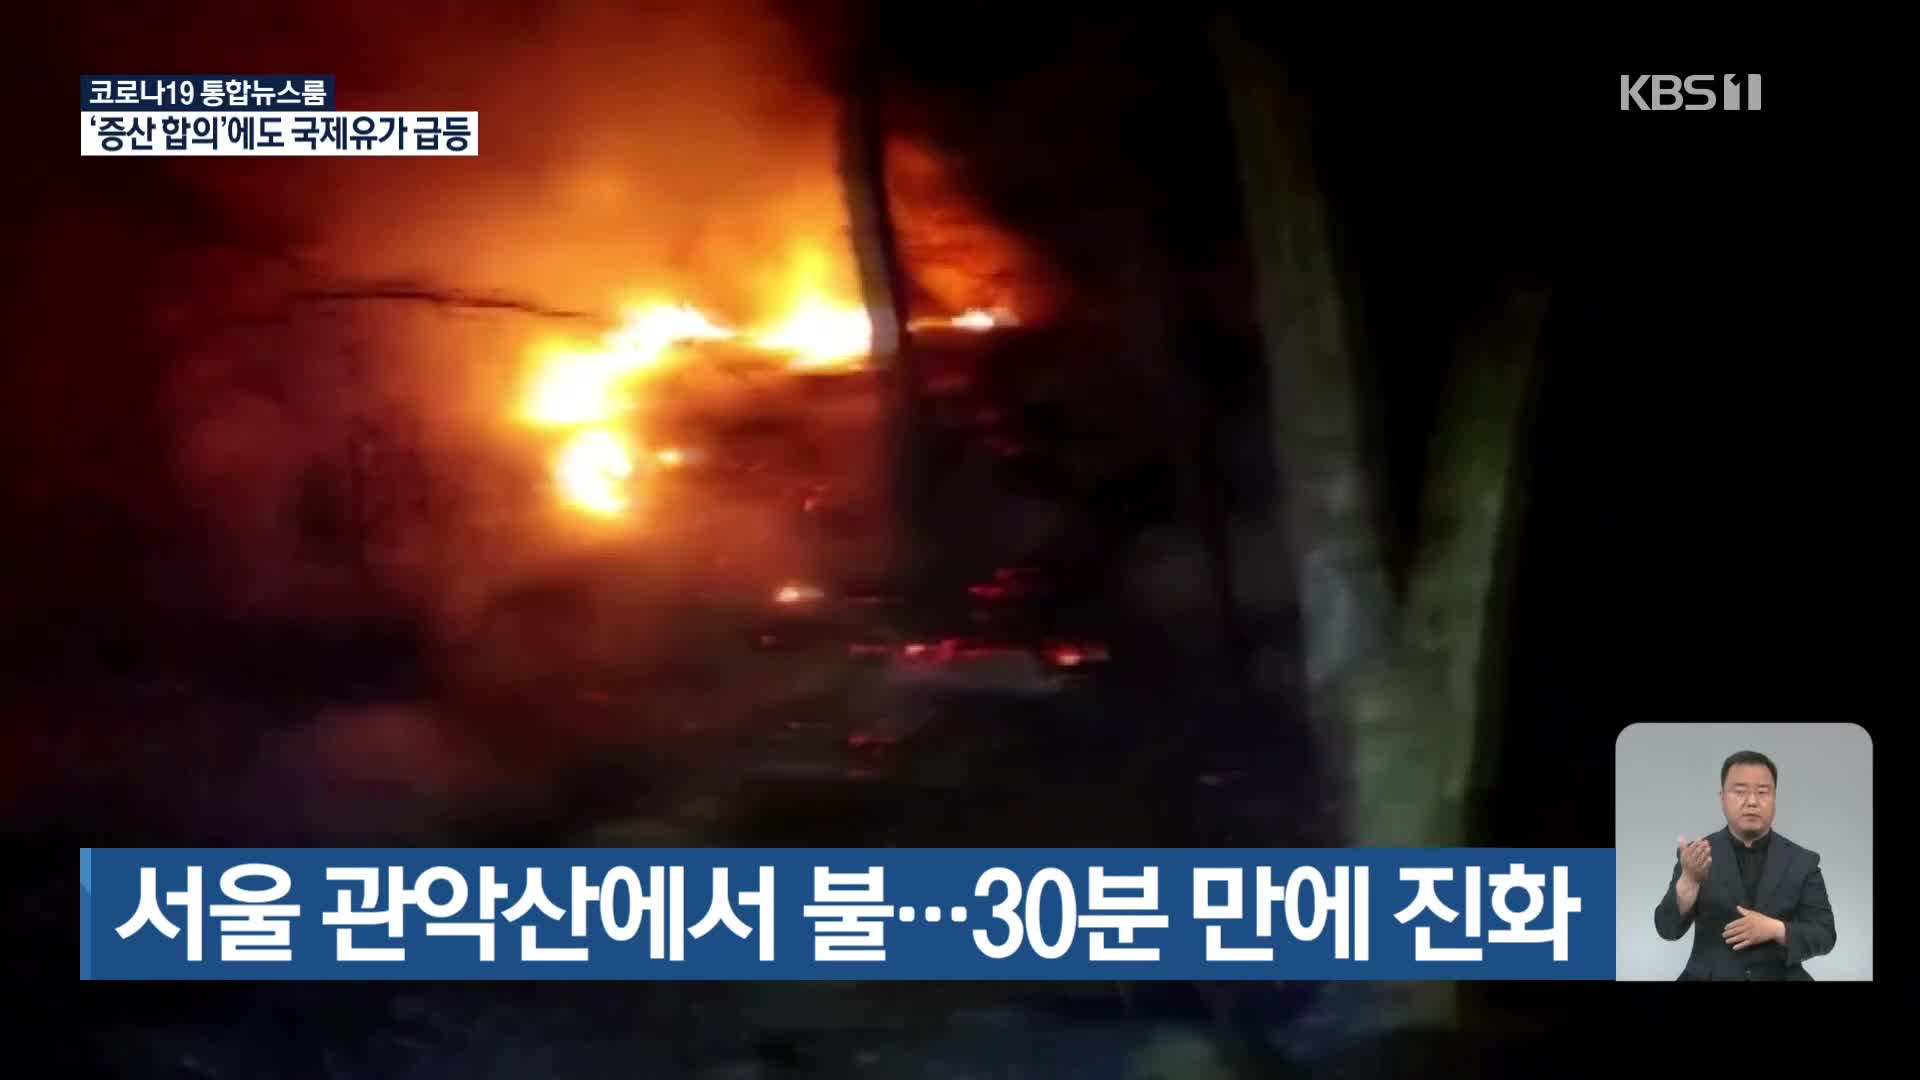 서울 관악산에서 불, 30분 만에 진화